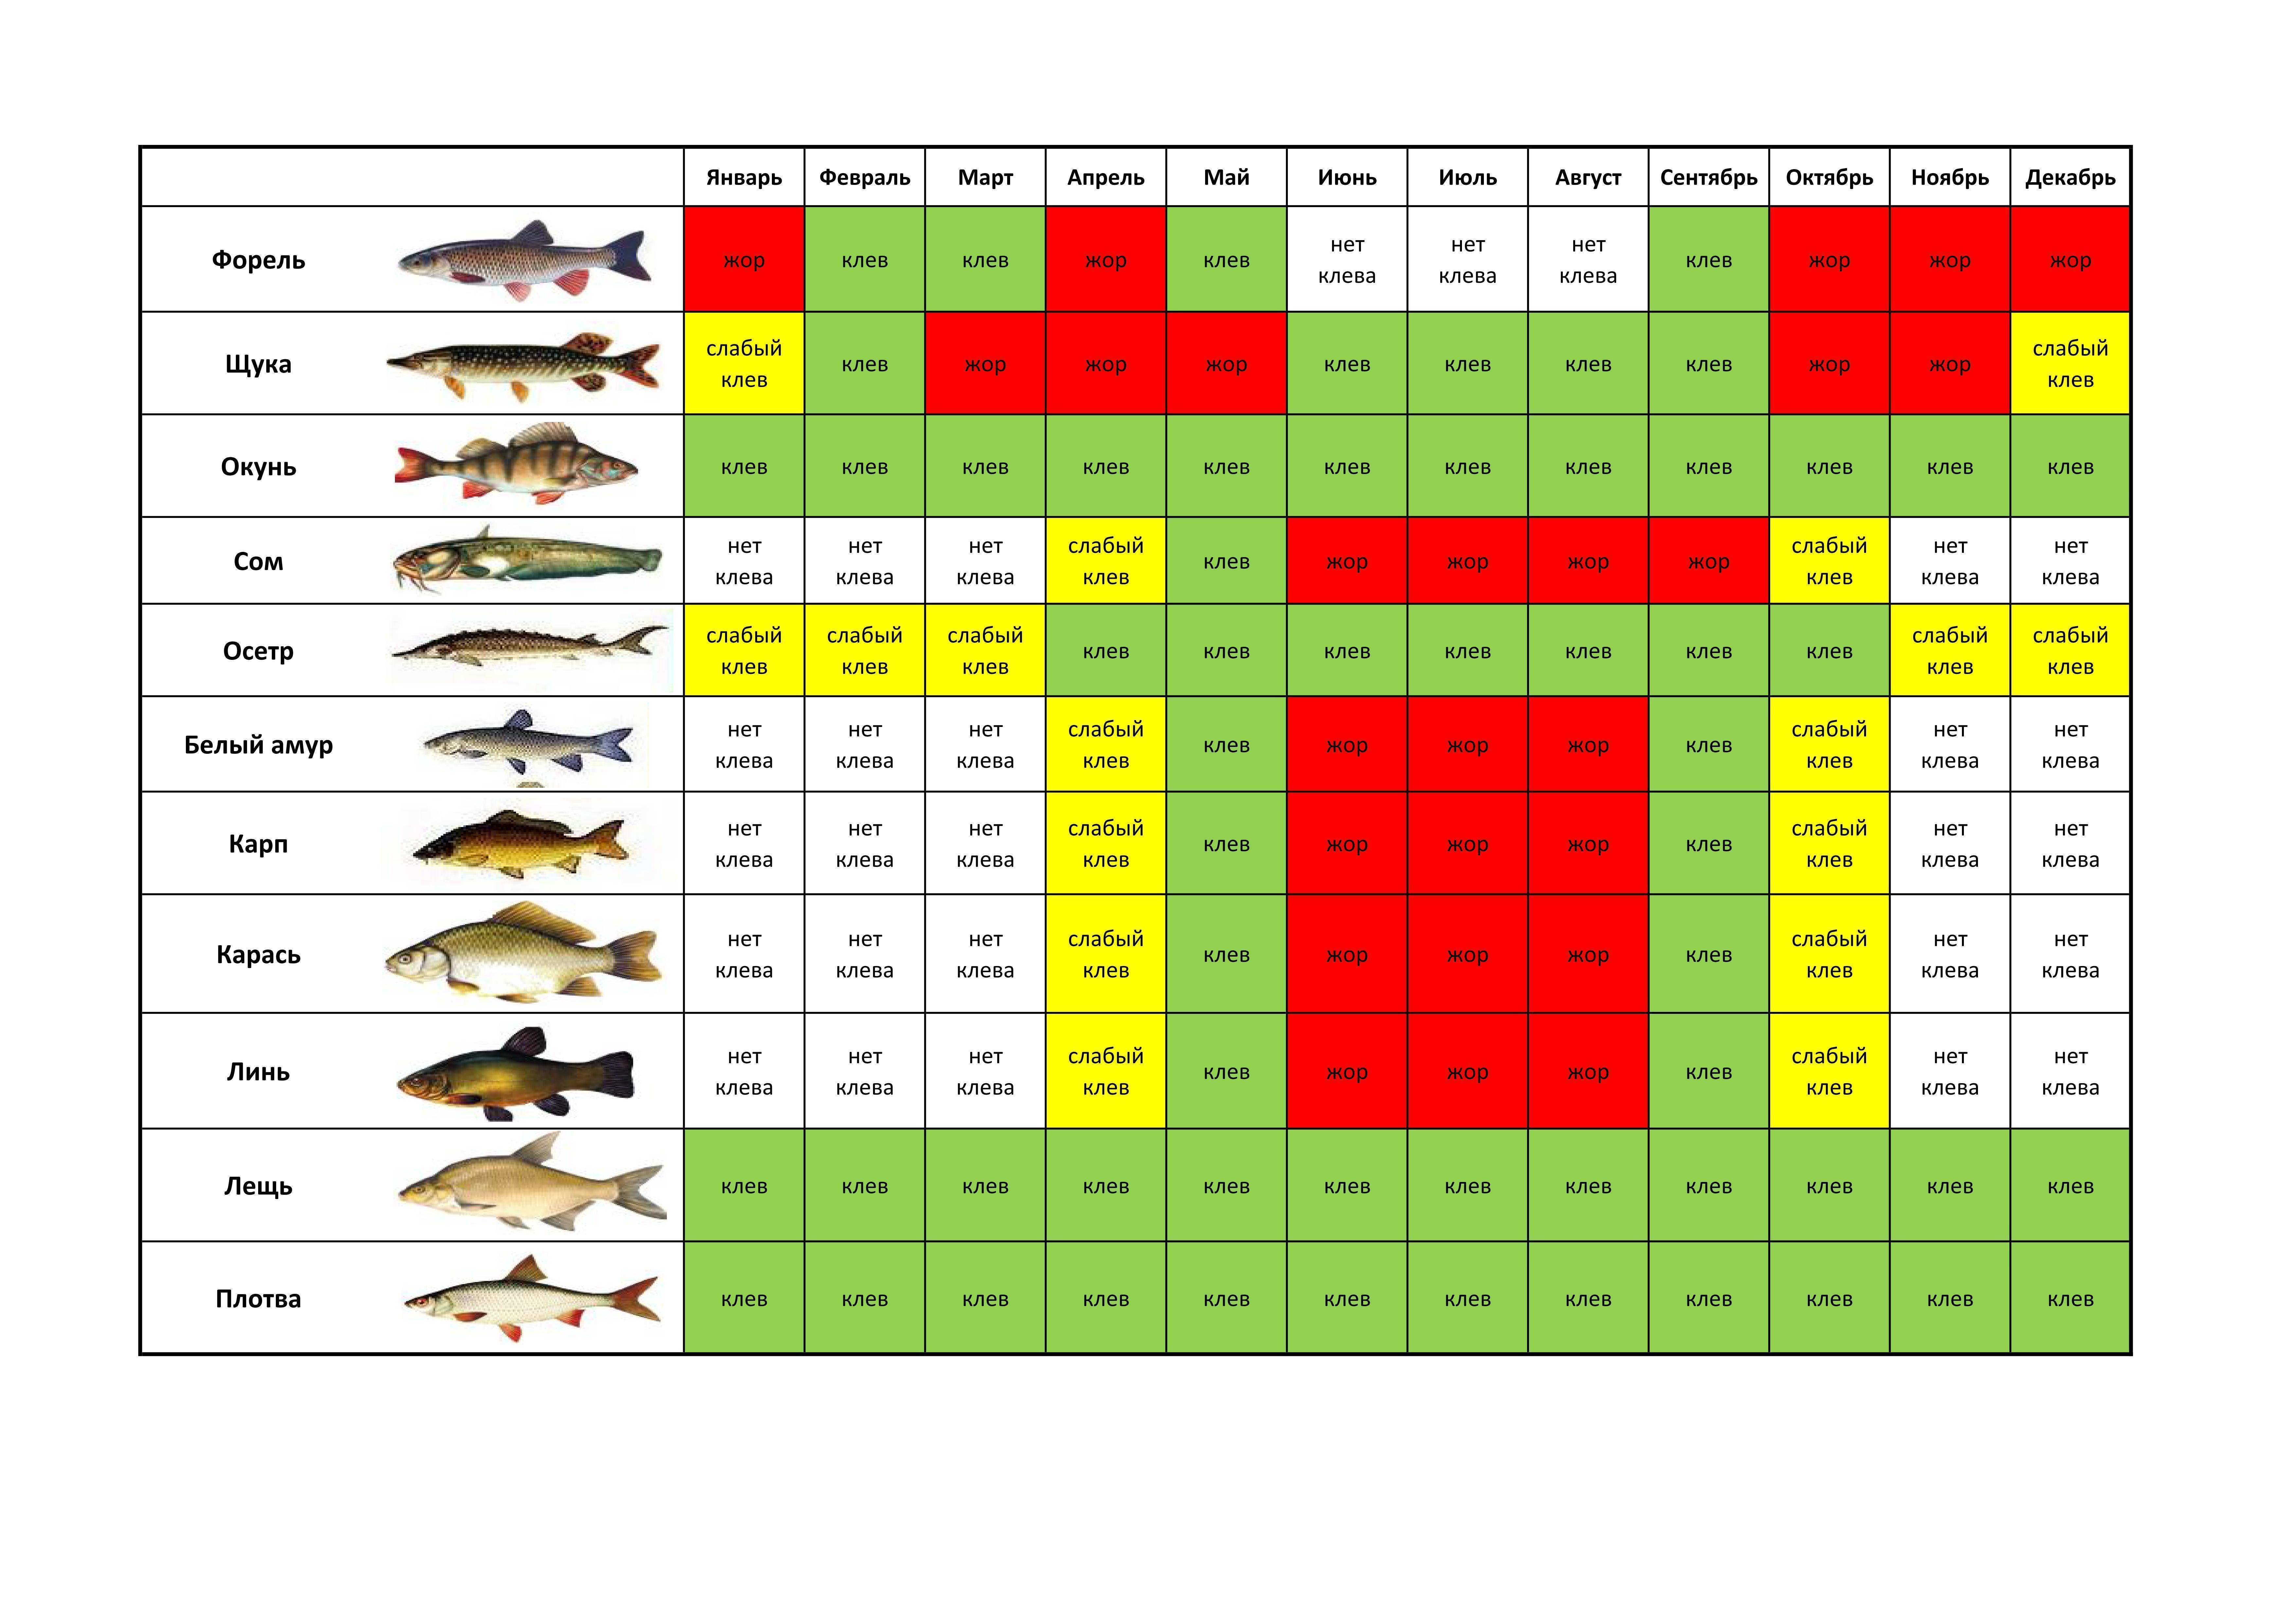 На что можно ловить рыбу по правилам рыболовства: нормы вылова, разрешенные снасти и места рыбалки
на что можно ловить рыбу по правилам рыболовства: нормы вылова, разрешенные снасти и места рыбалки